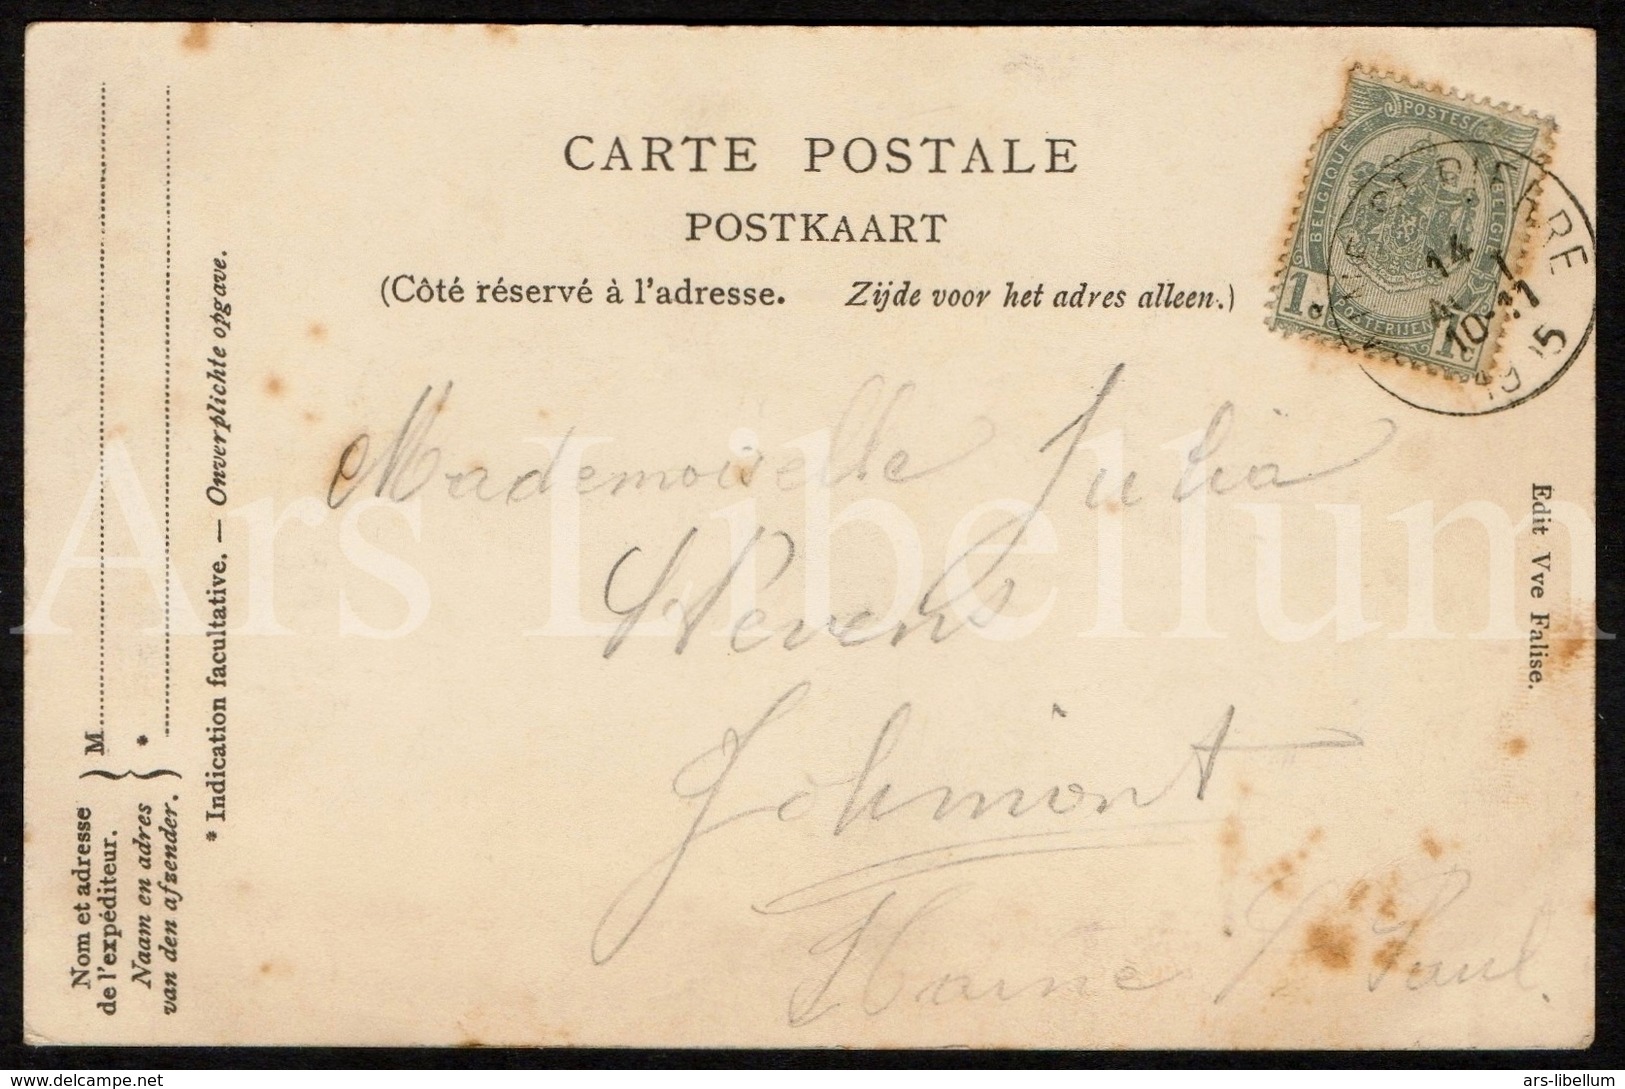 Postcard / CPA / La Louvière / Souvenir De La Louvière / 1905 / 2 Scans / Edit. Vve Falise - La Louvière